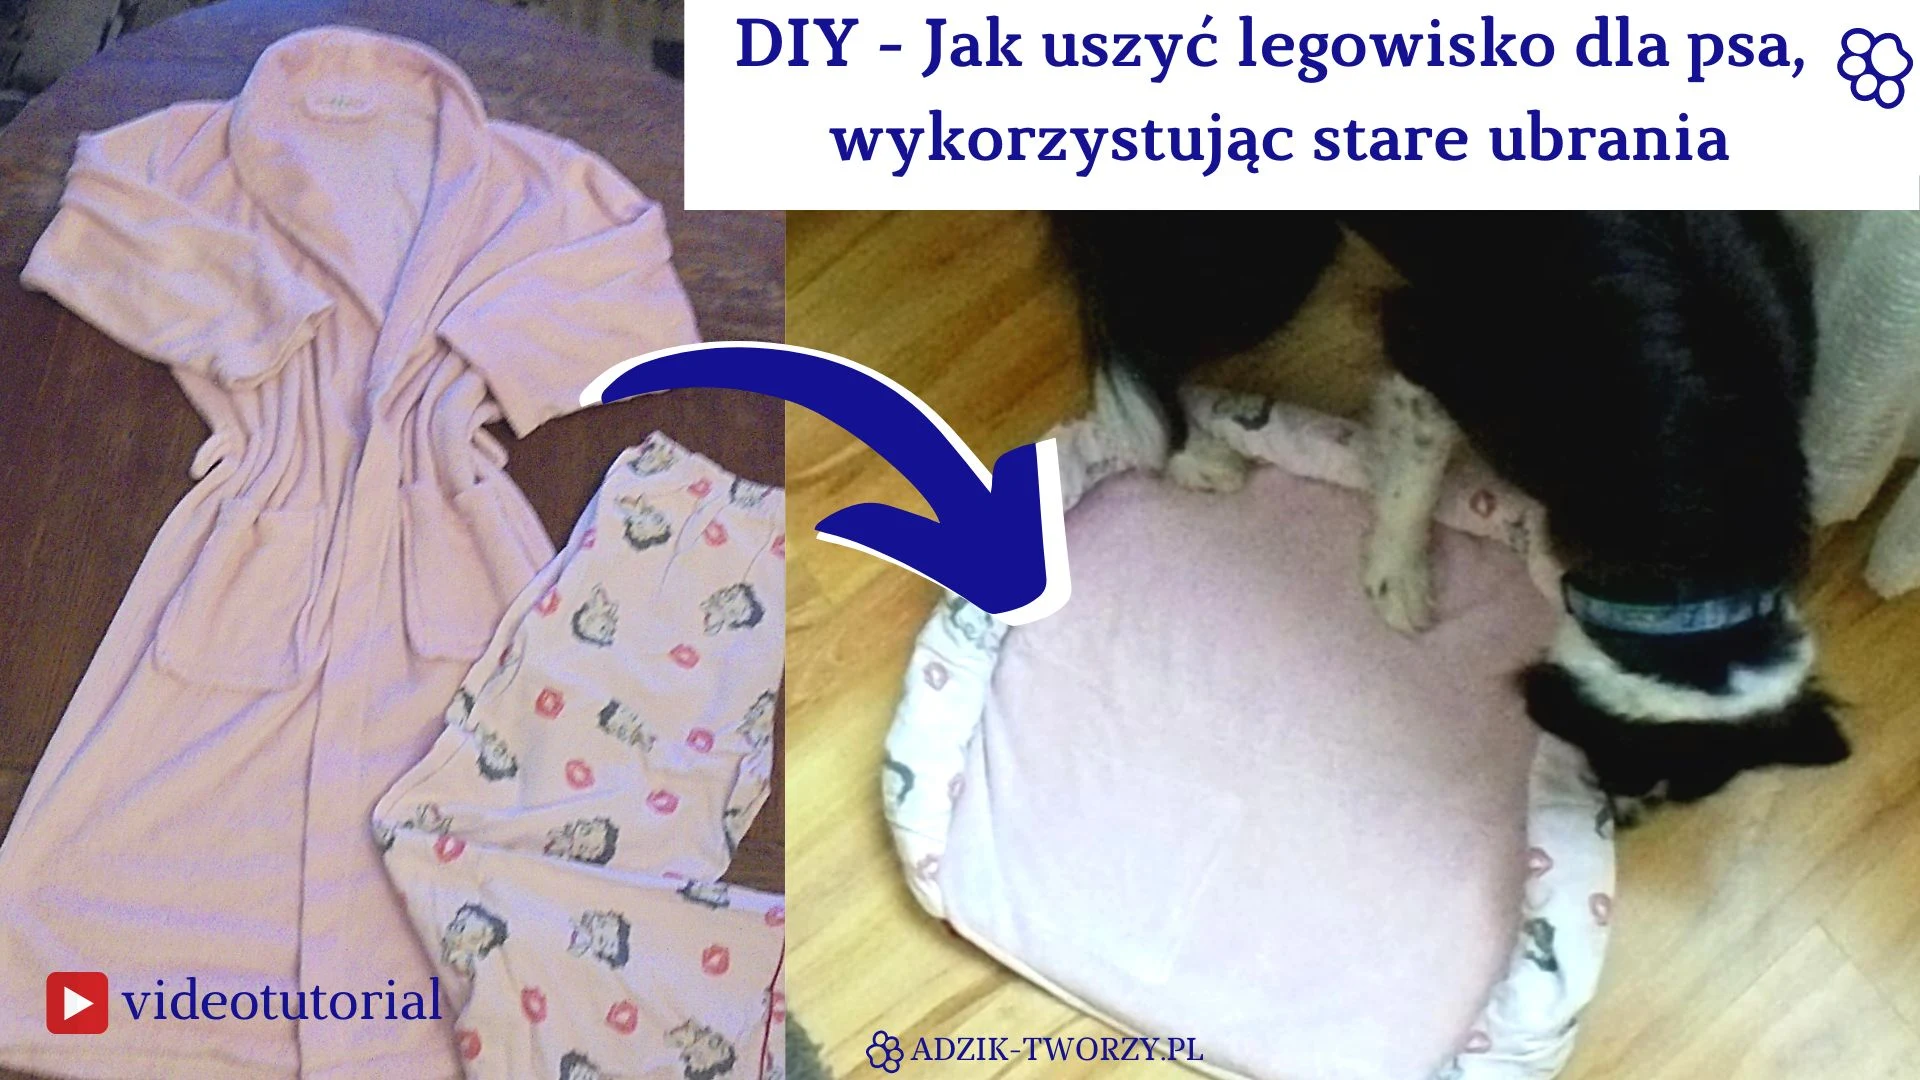 Legowisko dla psa DIY ze starych ubrań - blog o szyciu Adzik-tworzy.pl